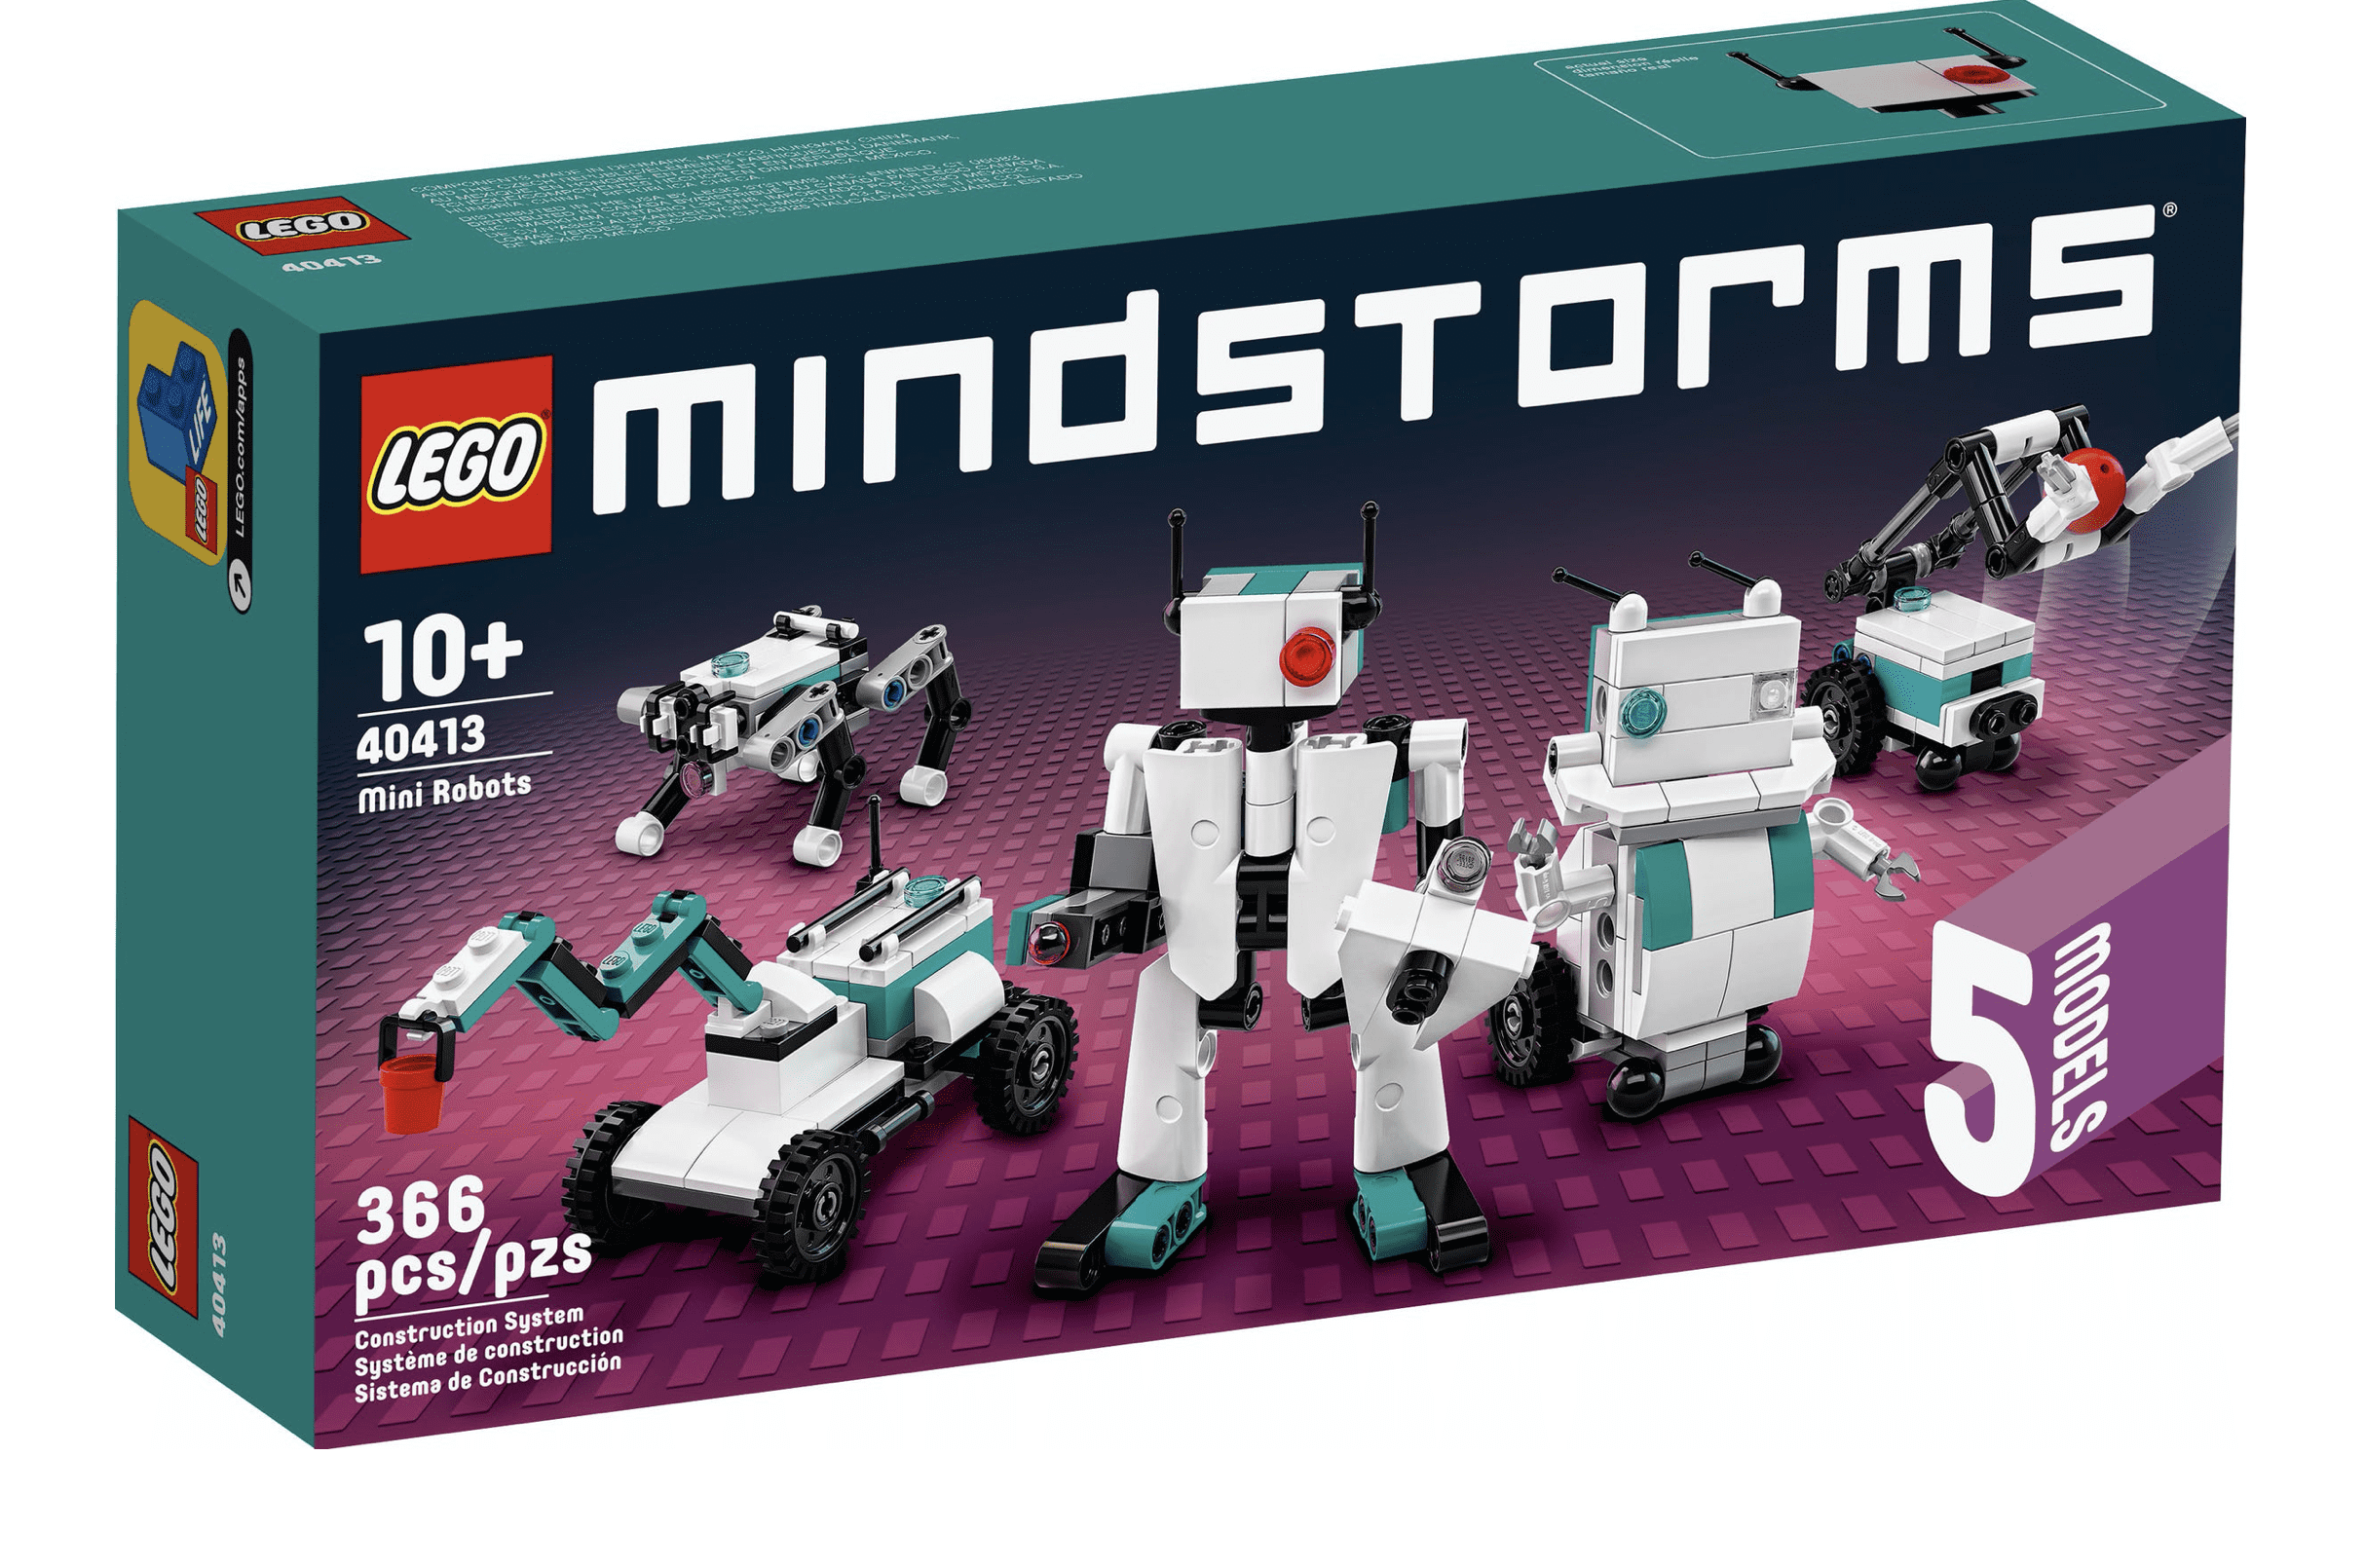 tendens regeringstid Selskabelig Lego 40413 Mindstorms Mini Robots 5 Models Set New with Sealed Box -  Walmart.com